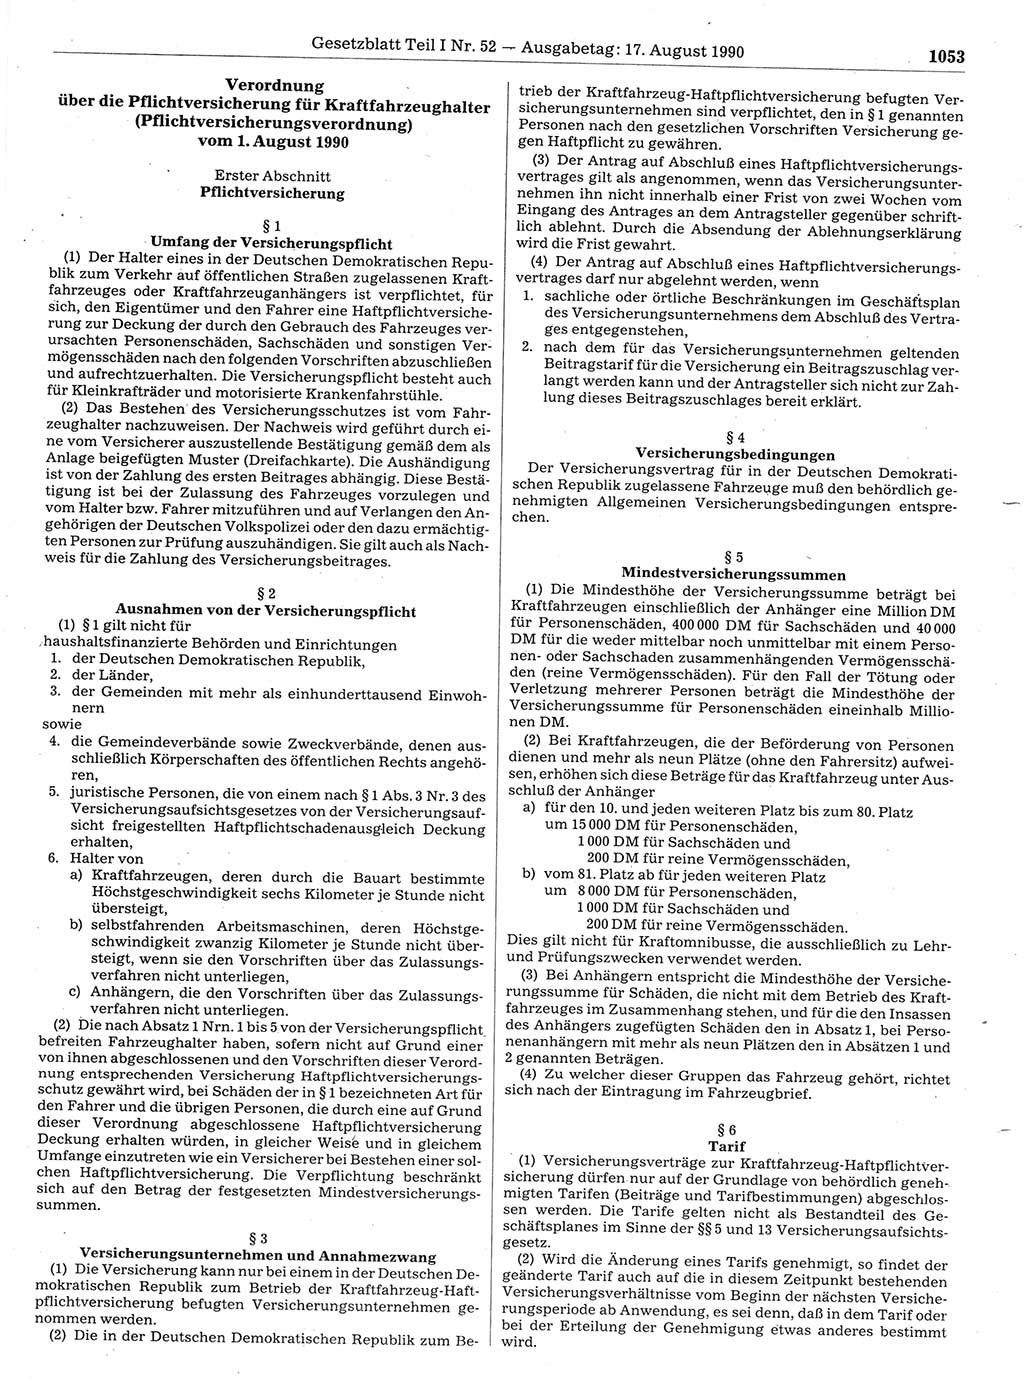 Gesetzblatt (GBl.) der Deutschen Demokratischen Republik (DDR) Teil Ⅰ 1990, Seite 1053 (GBl. DDR Ⅰ 1990, S. 1053)